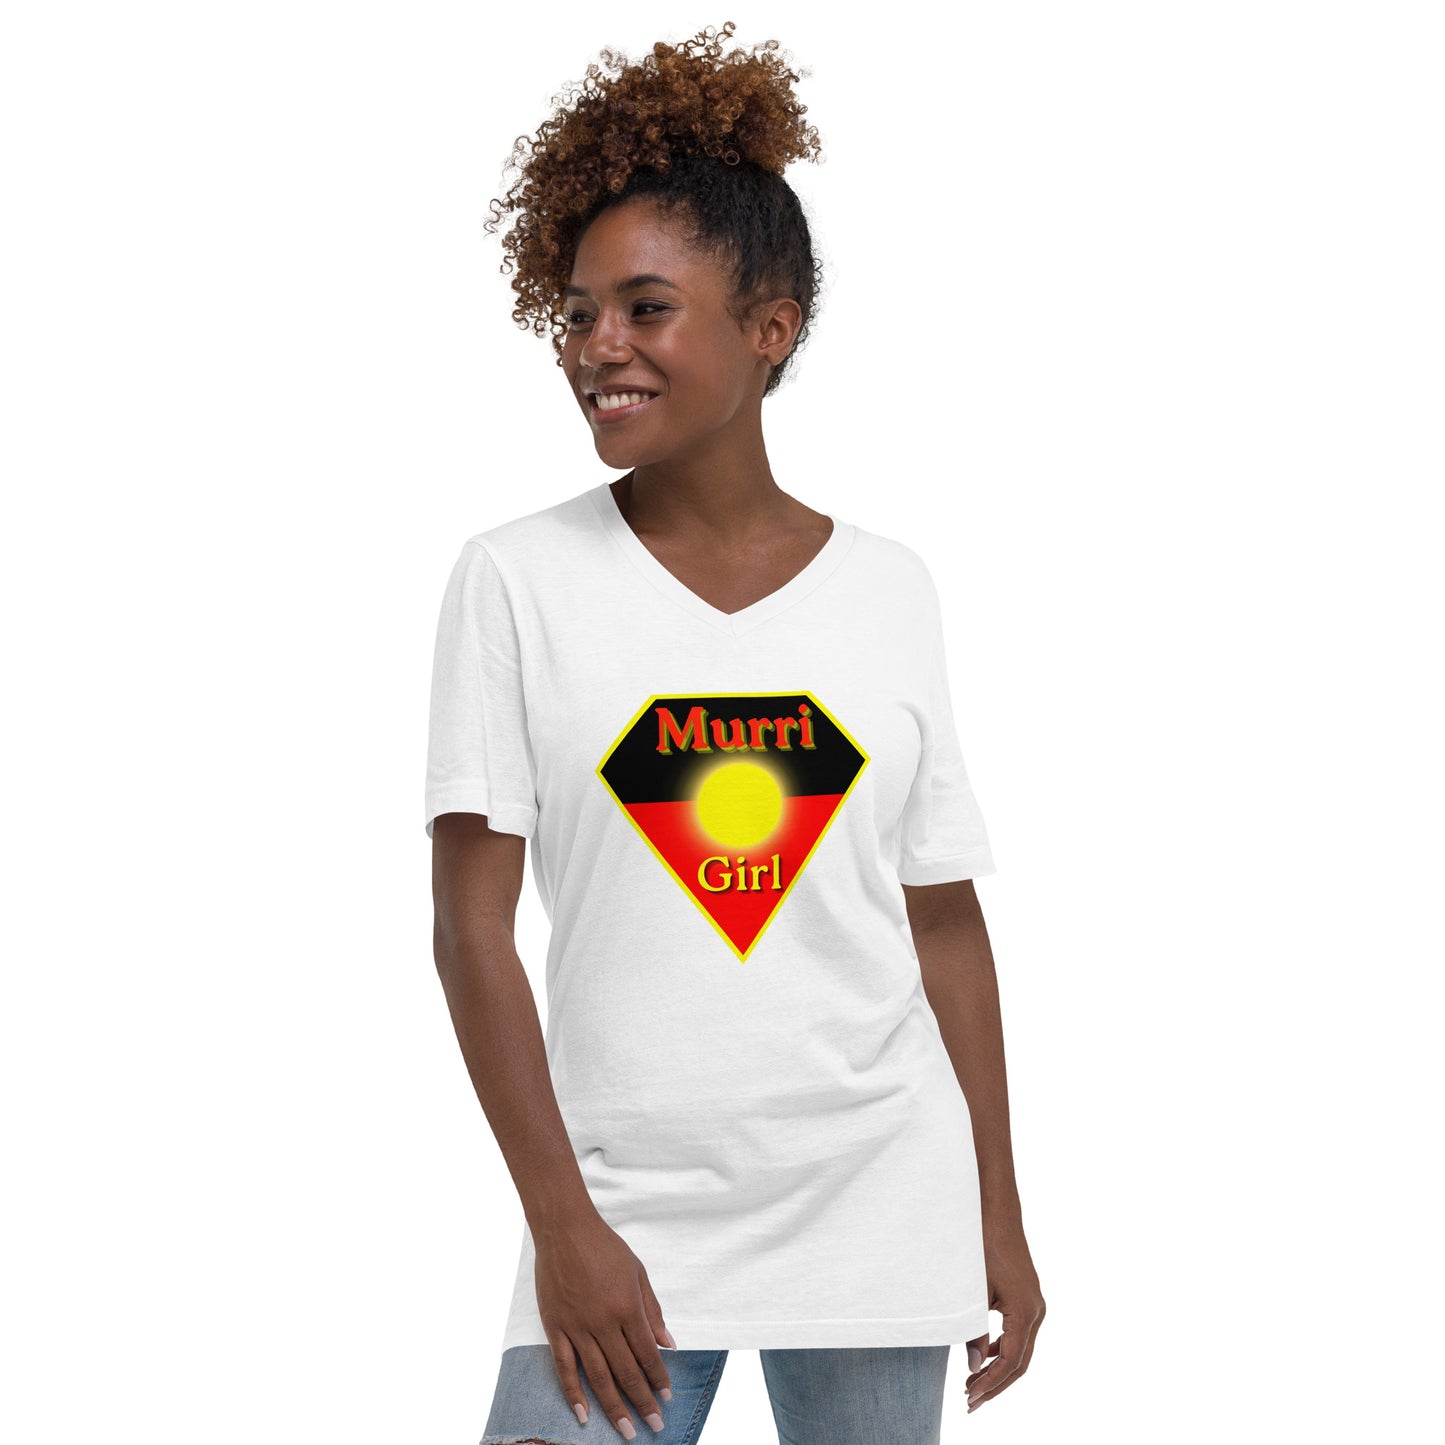 Murri Girl Super Woman V-Neck T-Shirt